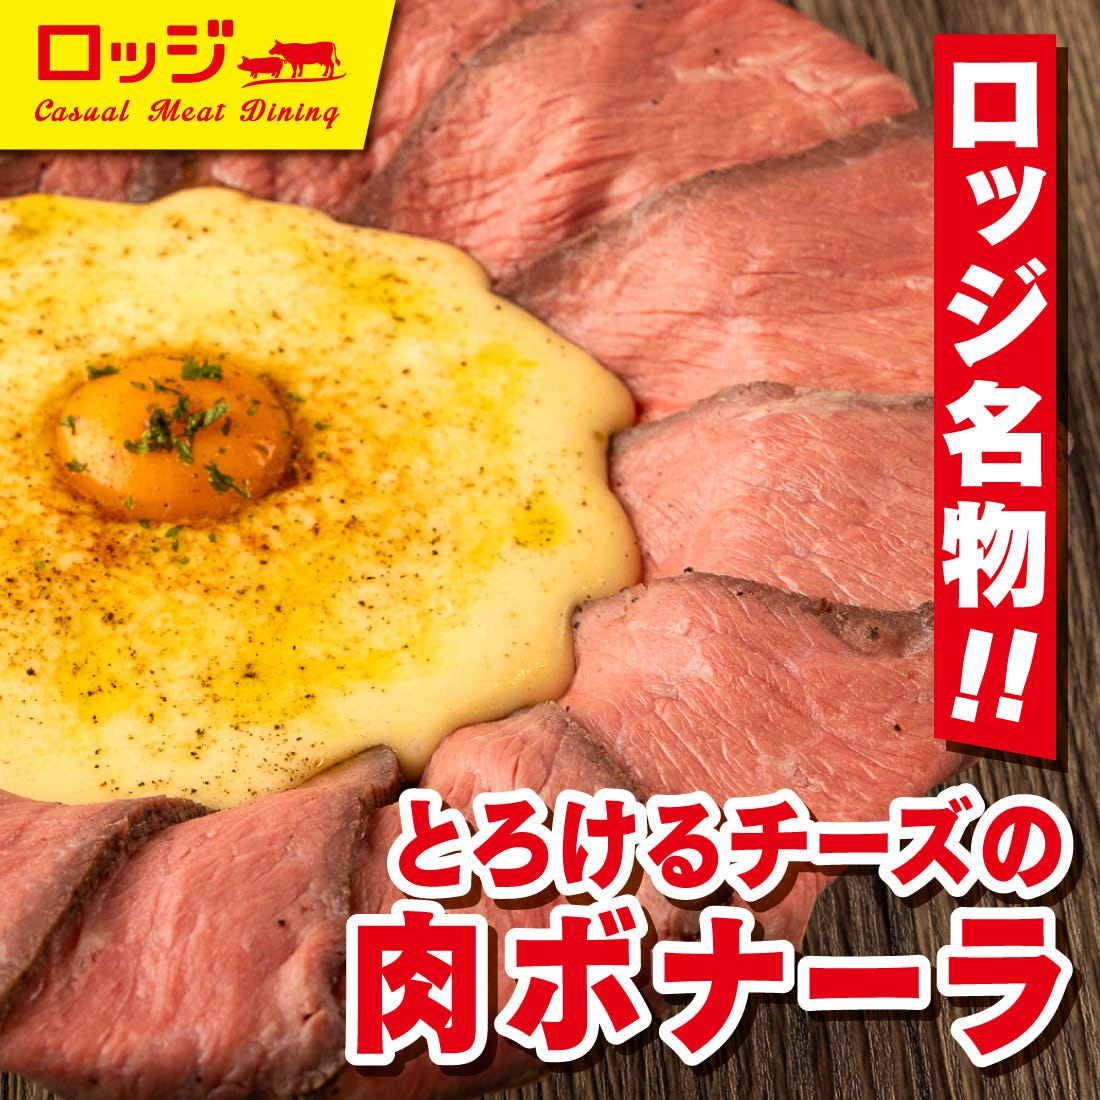 ラクレットチーズ×肉バル 東岡崎ロッジ